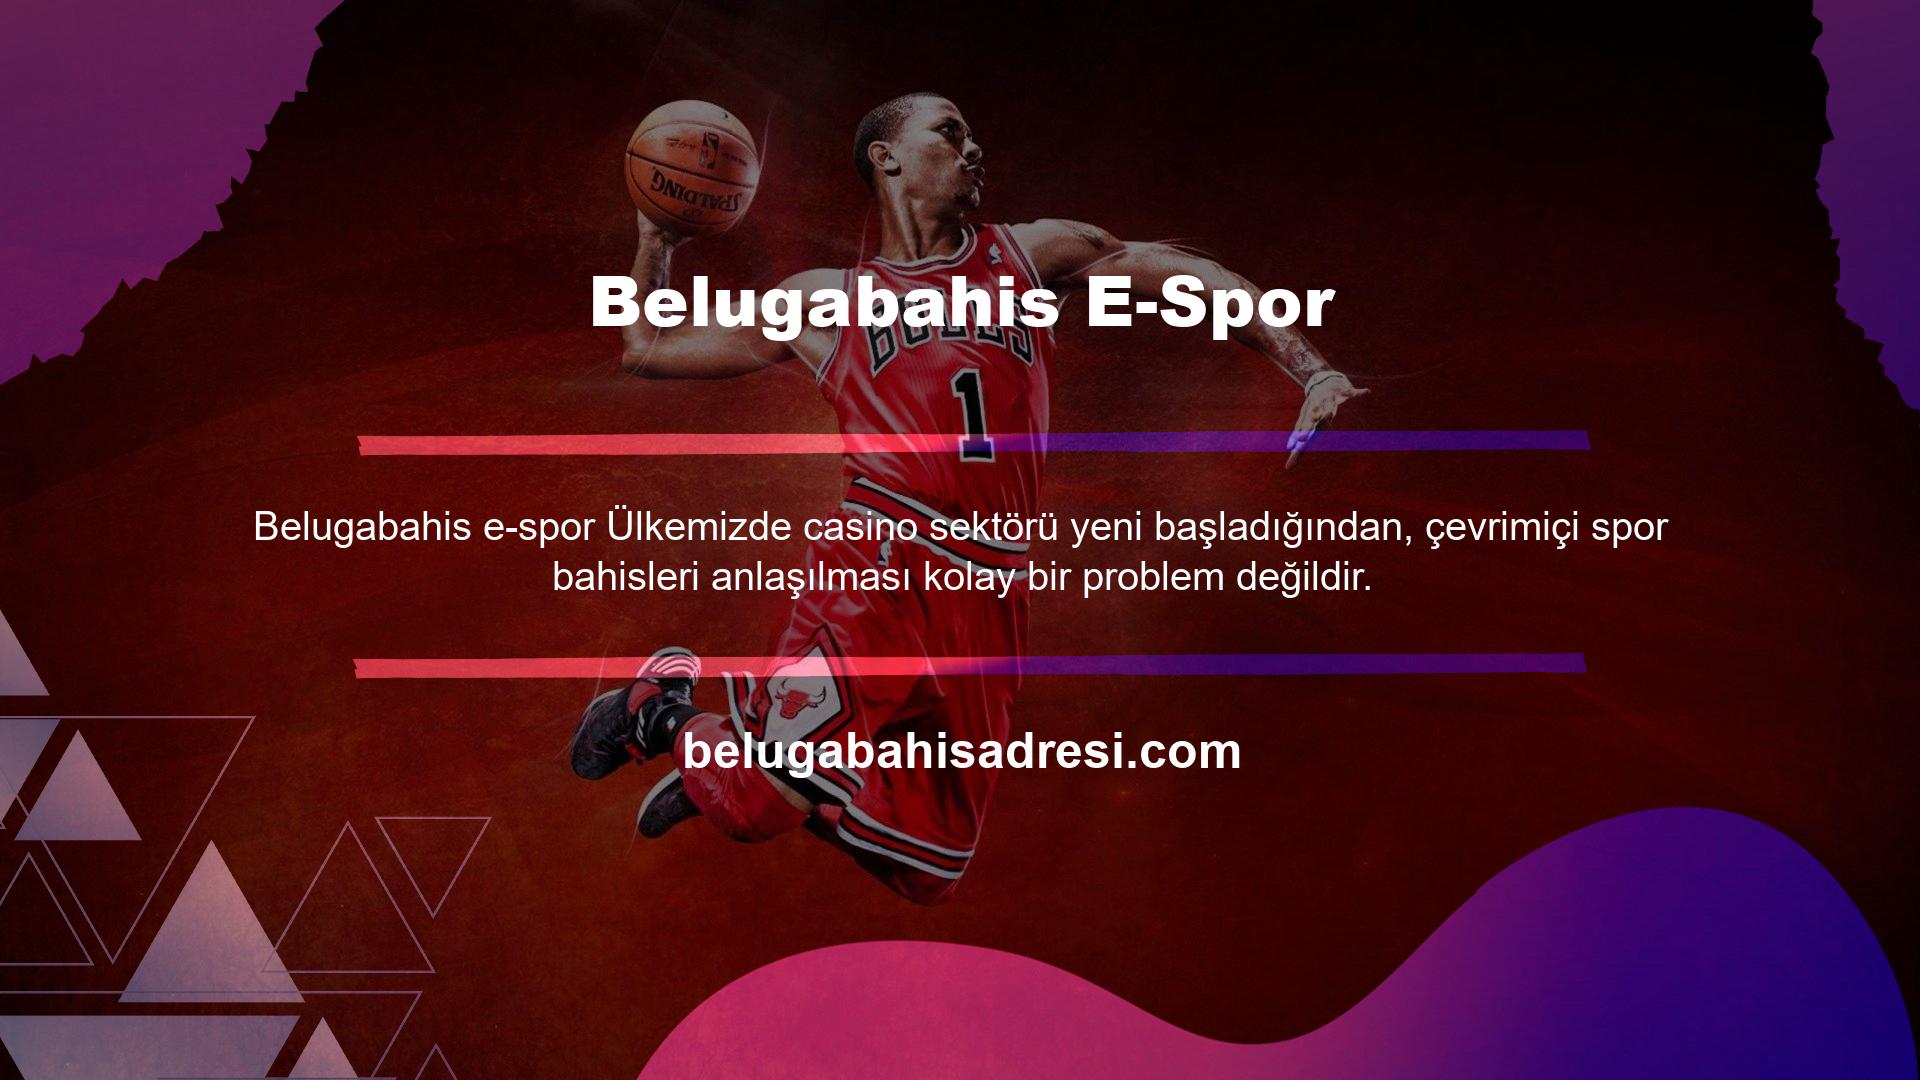 Casino tutkunlarının çoğunun sahip olduğu soruları yanıtlamak için Belugabahis E-sports oynamanın ayrıntılarını araştırıyoruz